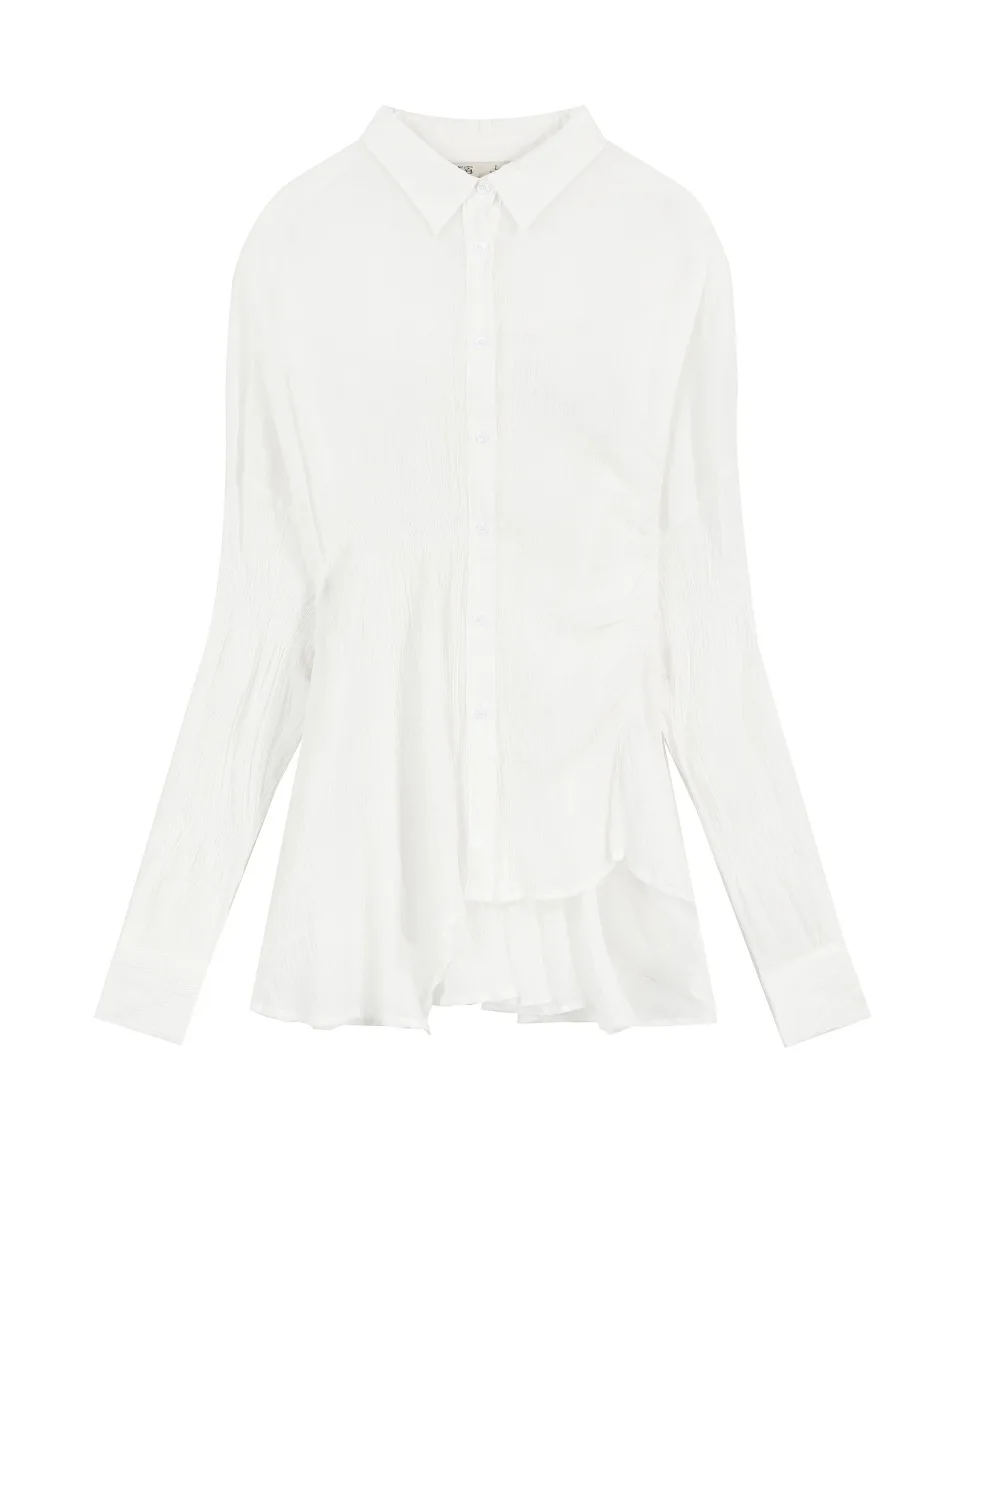 Samstree женская плиссированная белая блузка для лета с длинным рукавом хлопок размера плюс анти-солнечный свет женские блузки дизайн леди топы